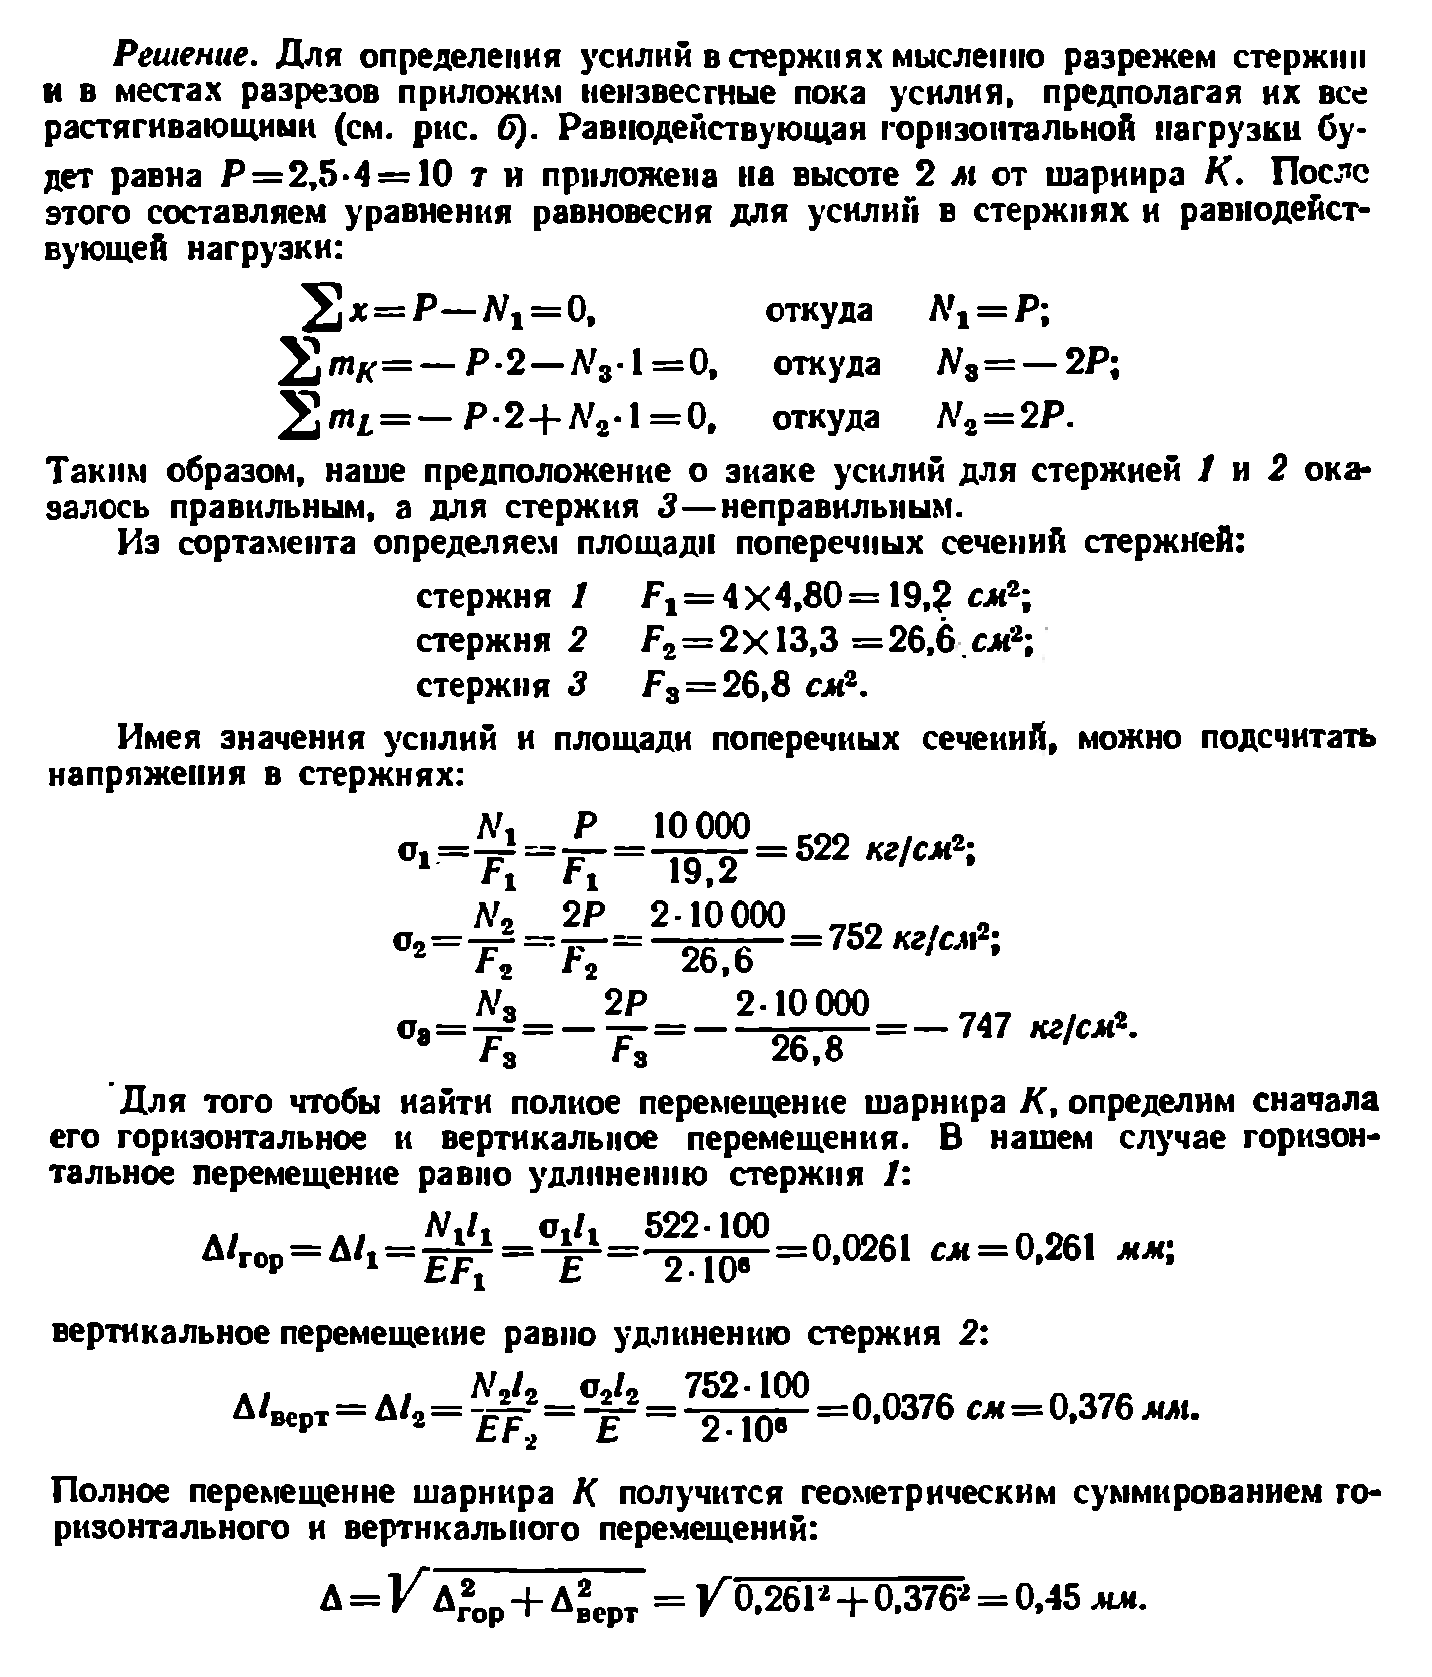 Решение к задаче 1.50 из сборника Качурина В.К.